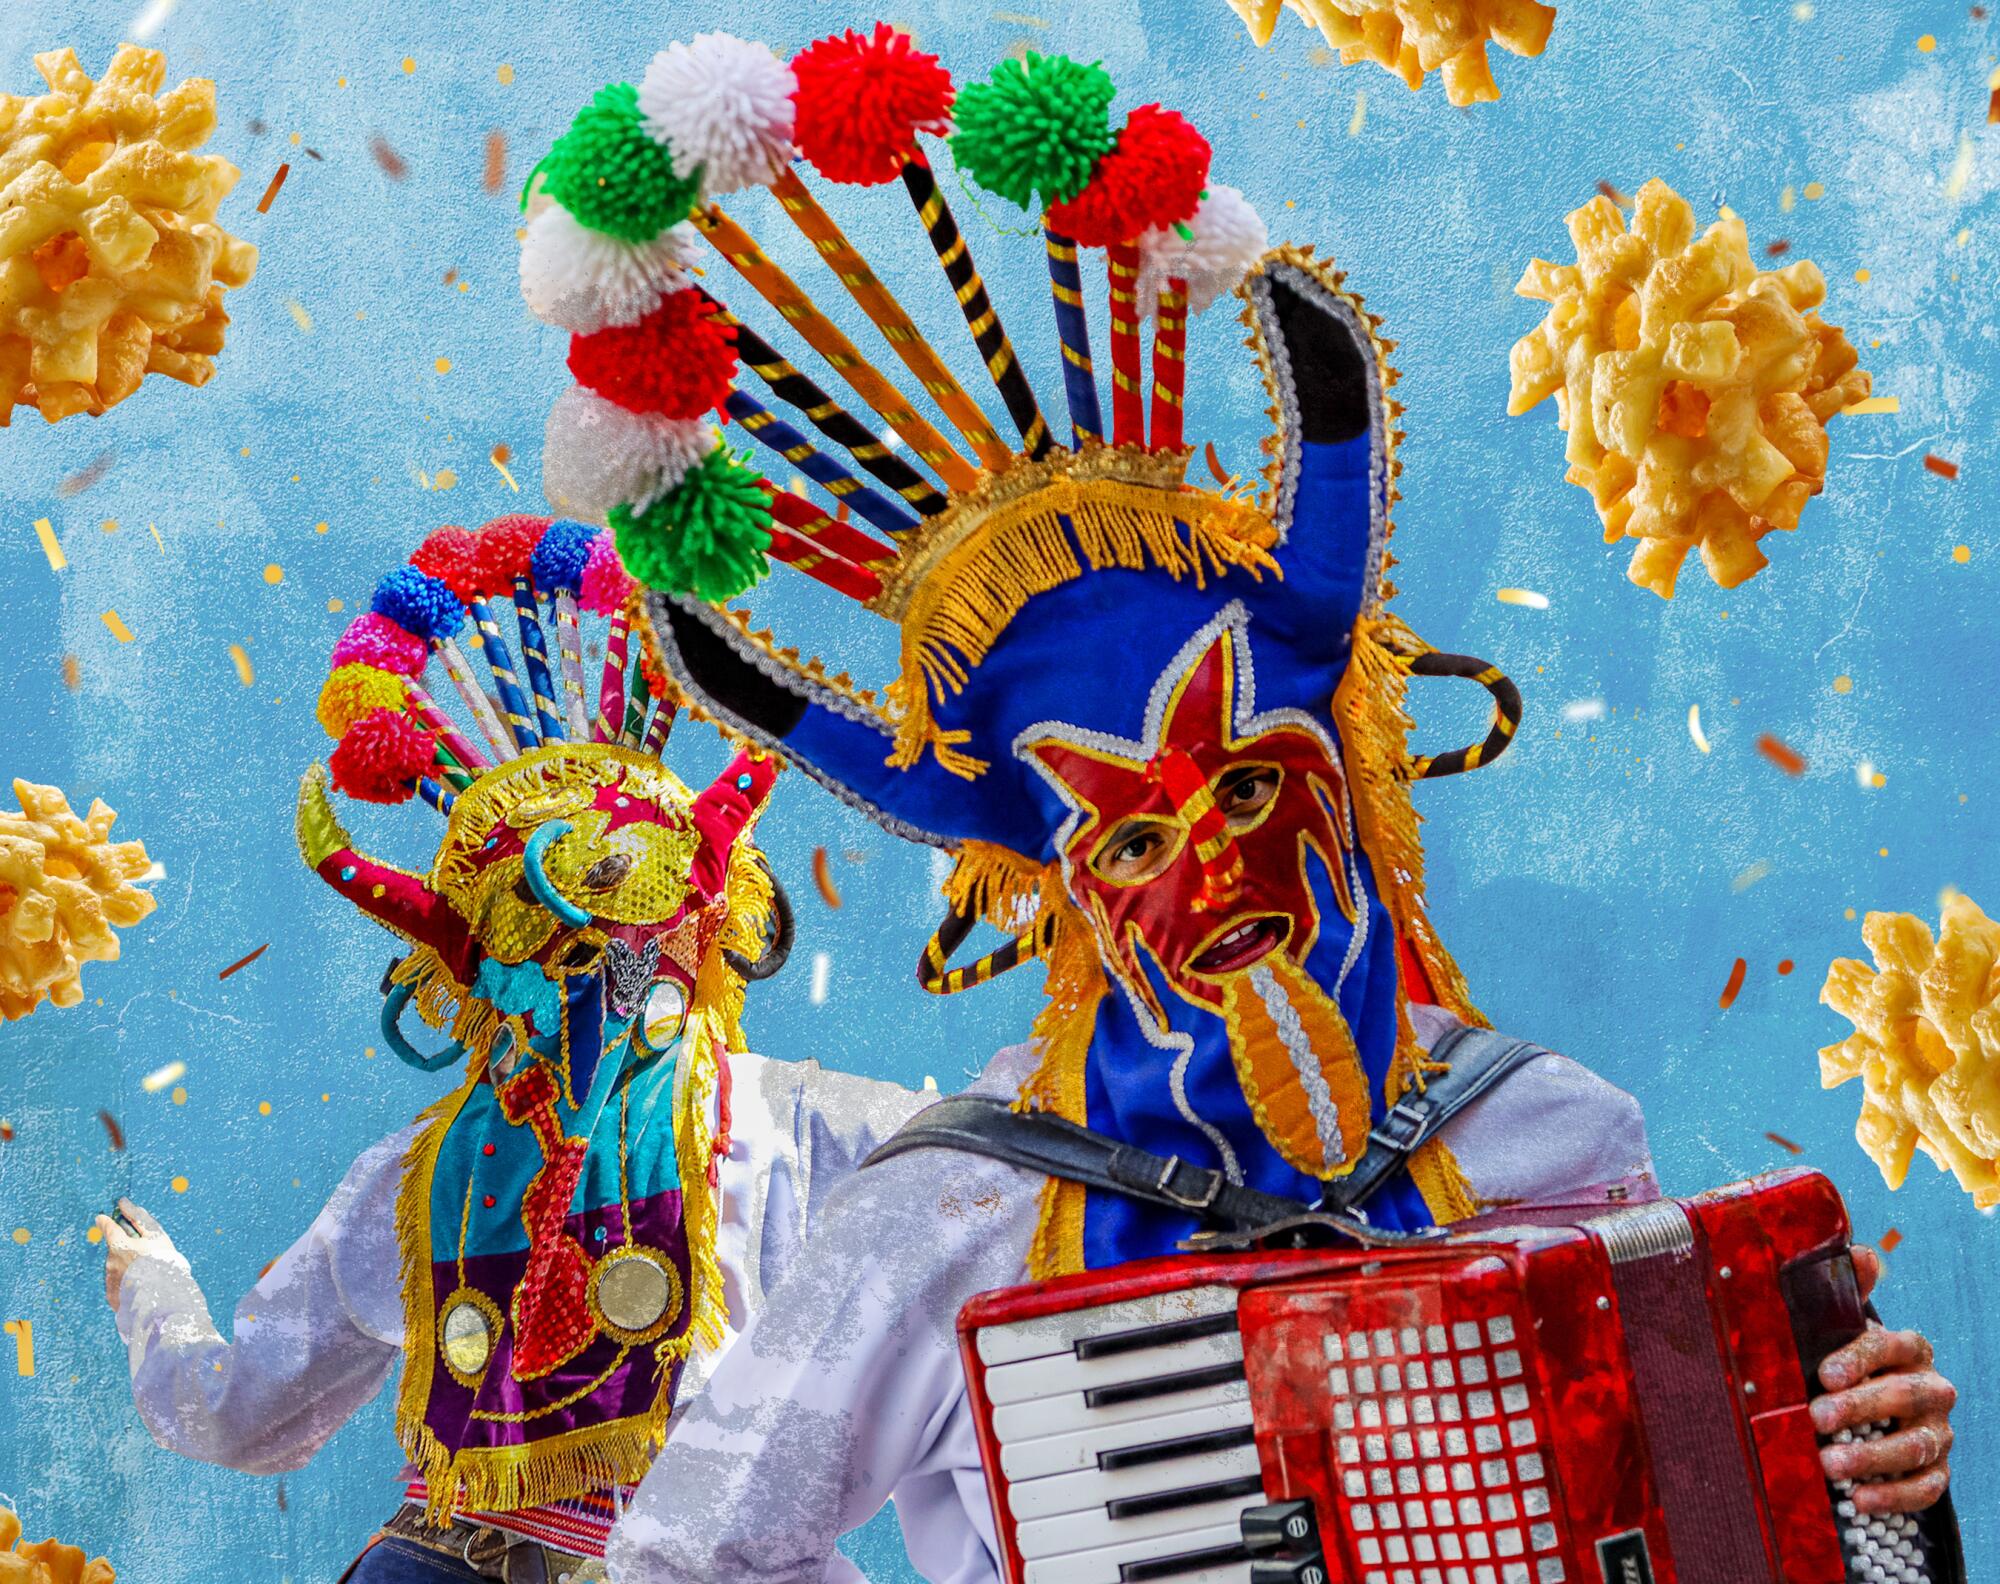 “Diablo Huma” is a character in the “Pase del Niño Viajero” parade in Cuenca, Ecuador. 